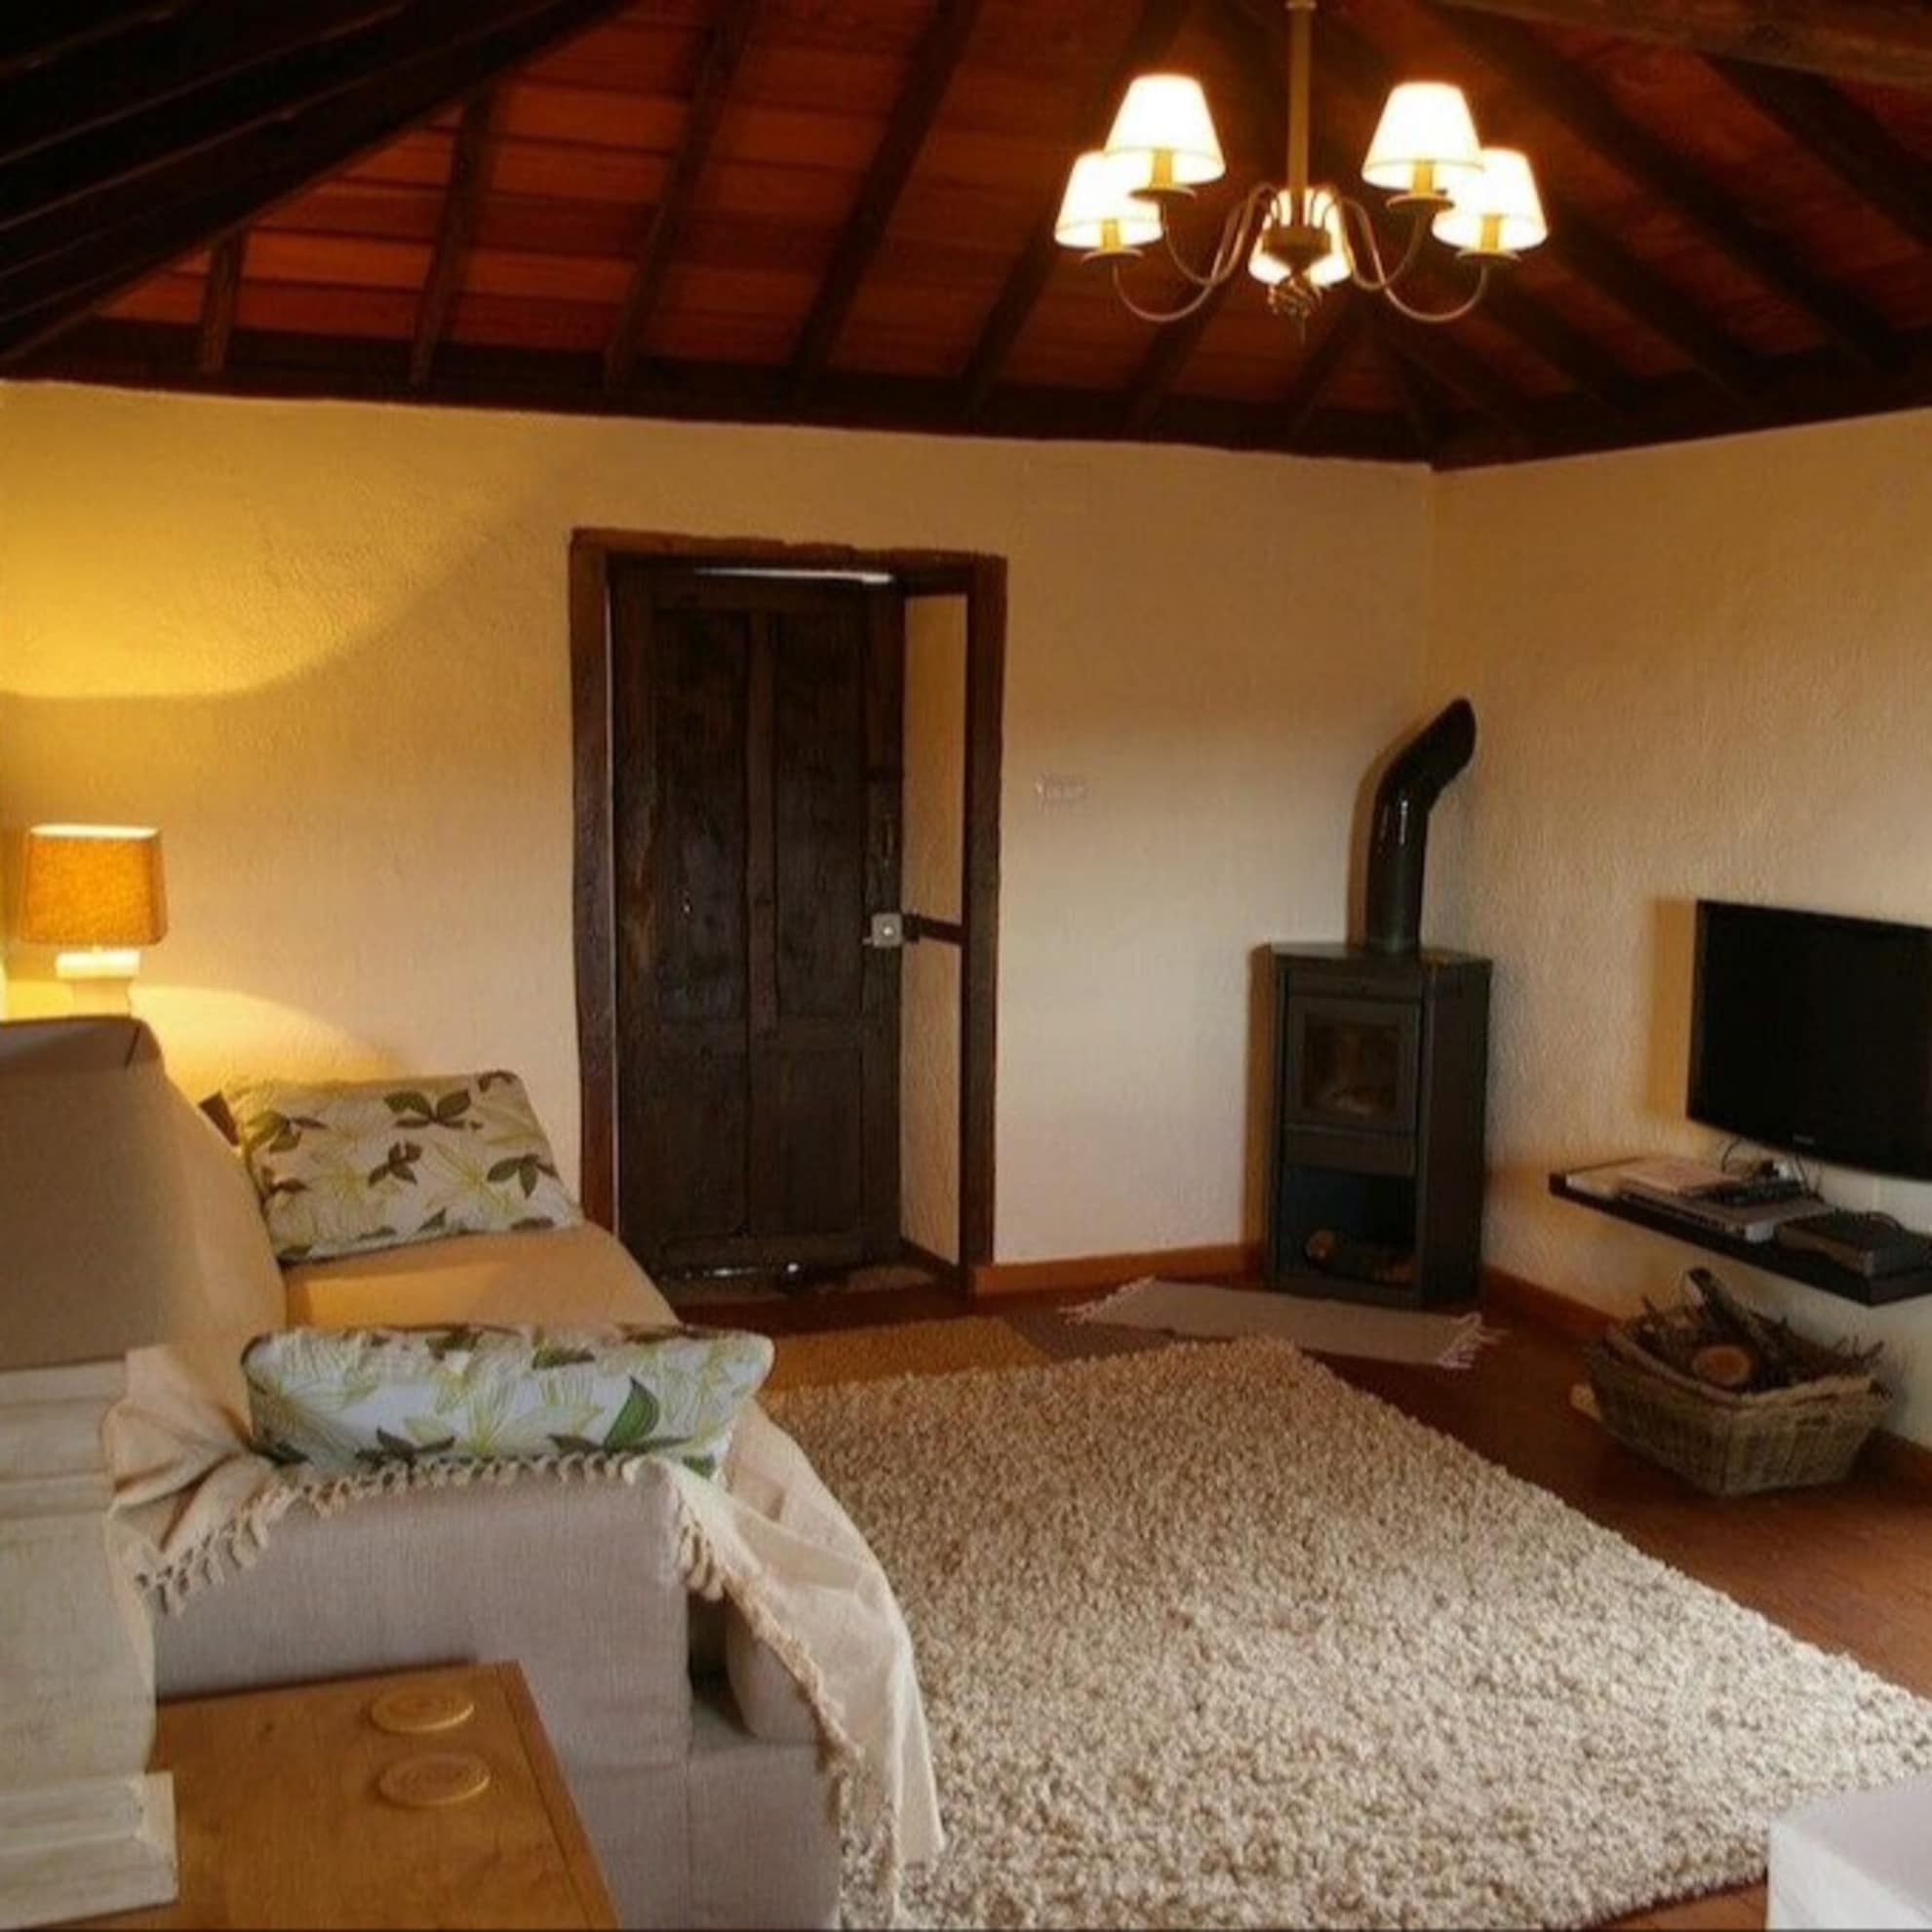 Gemütlicher Wohnraum im Ferienhaus auf La Palma mit hellen Möbeln, dickem Teppich, Ofen und holzvertäfelter Decke